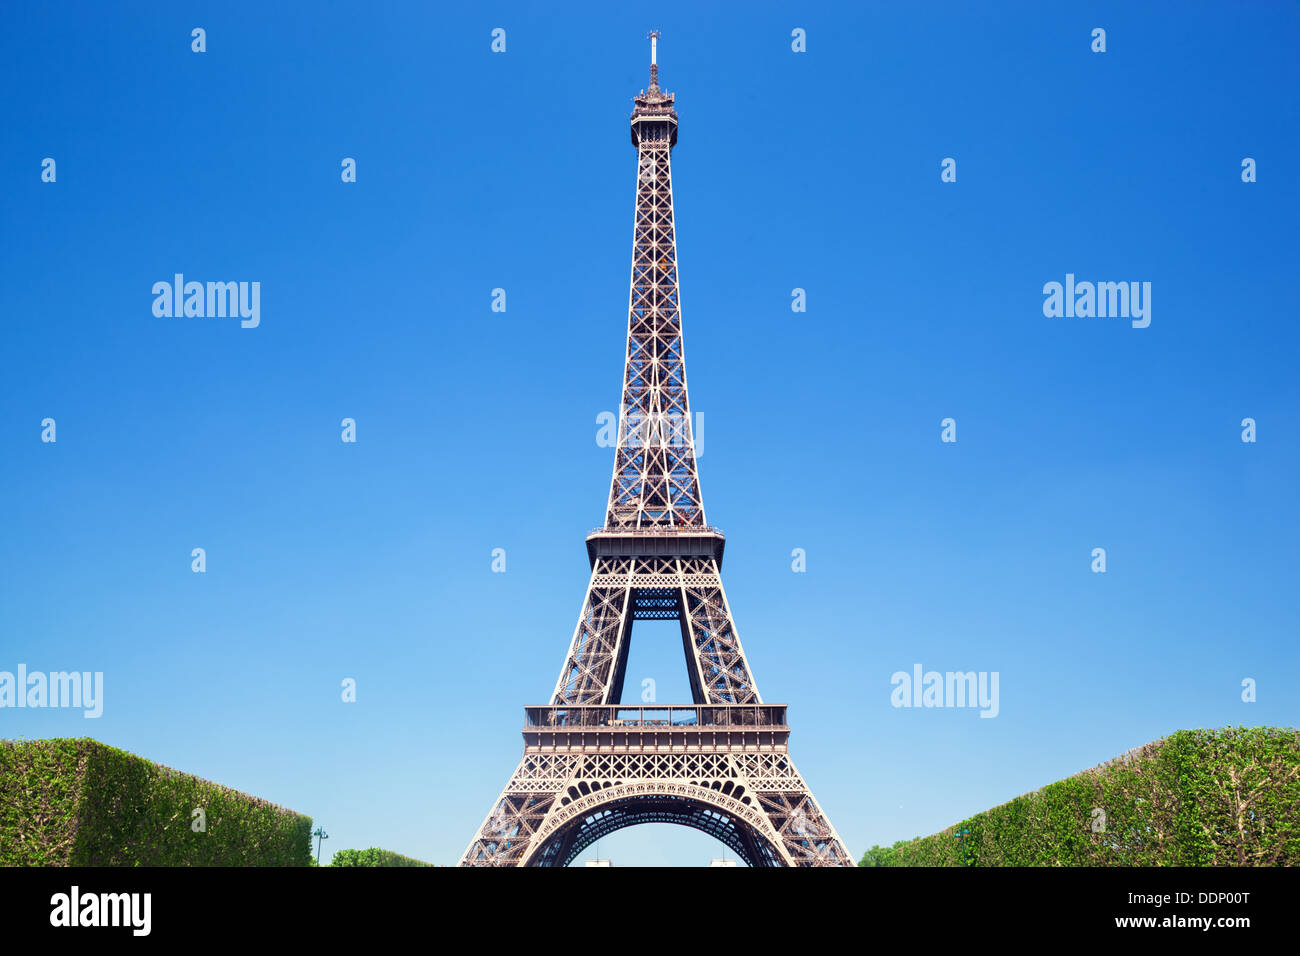 Vue d'été de la Tour Eiffel contre un ciel bleu, Paris Banque D'Images